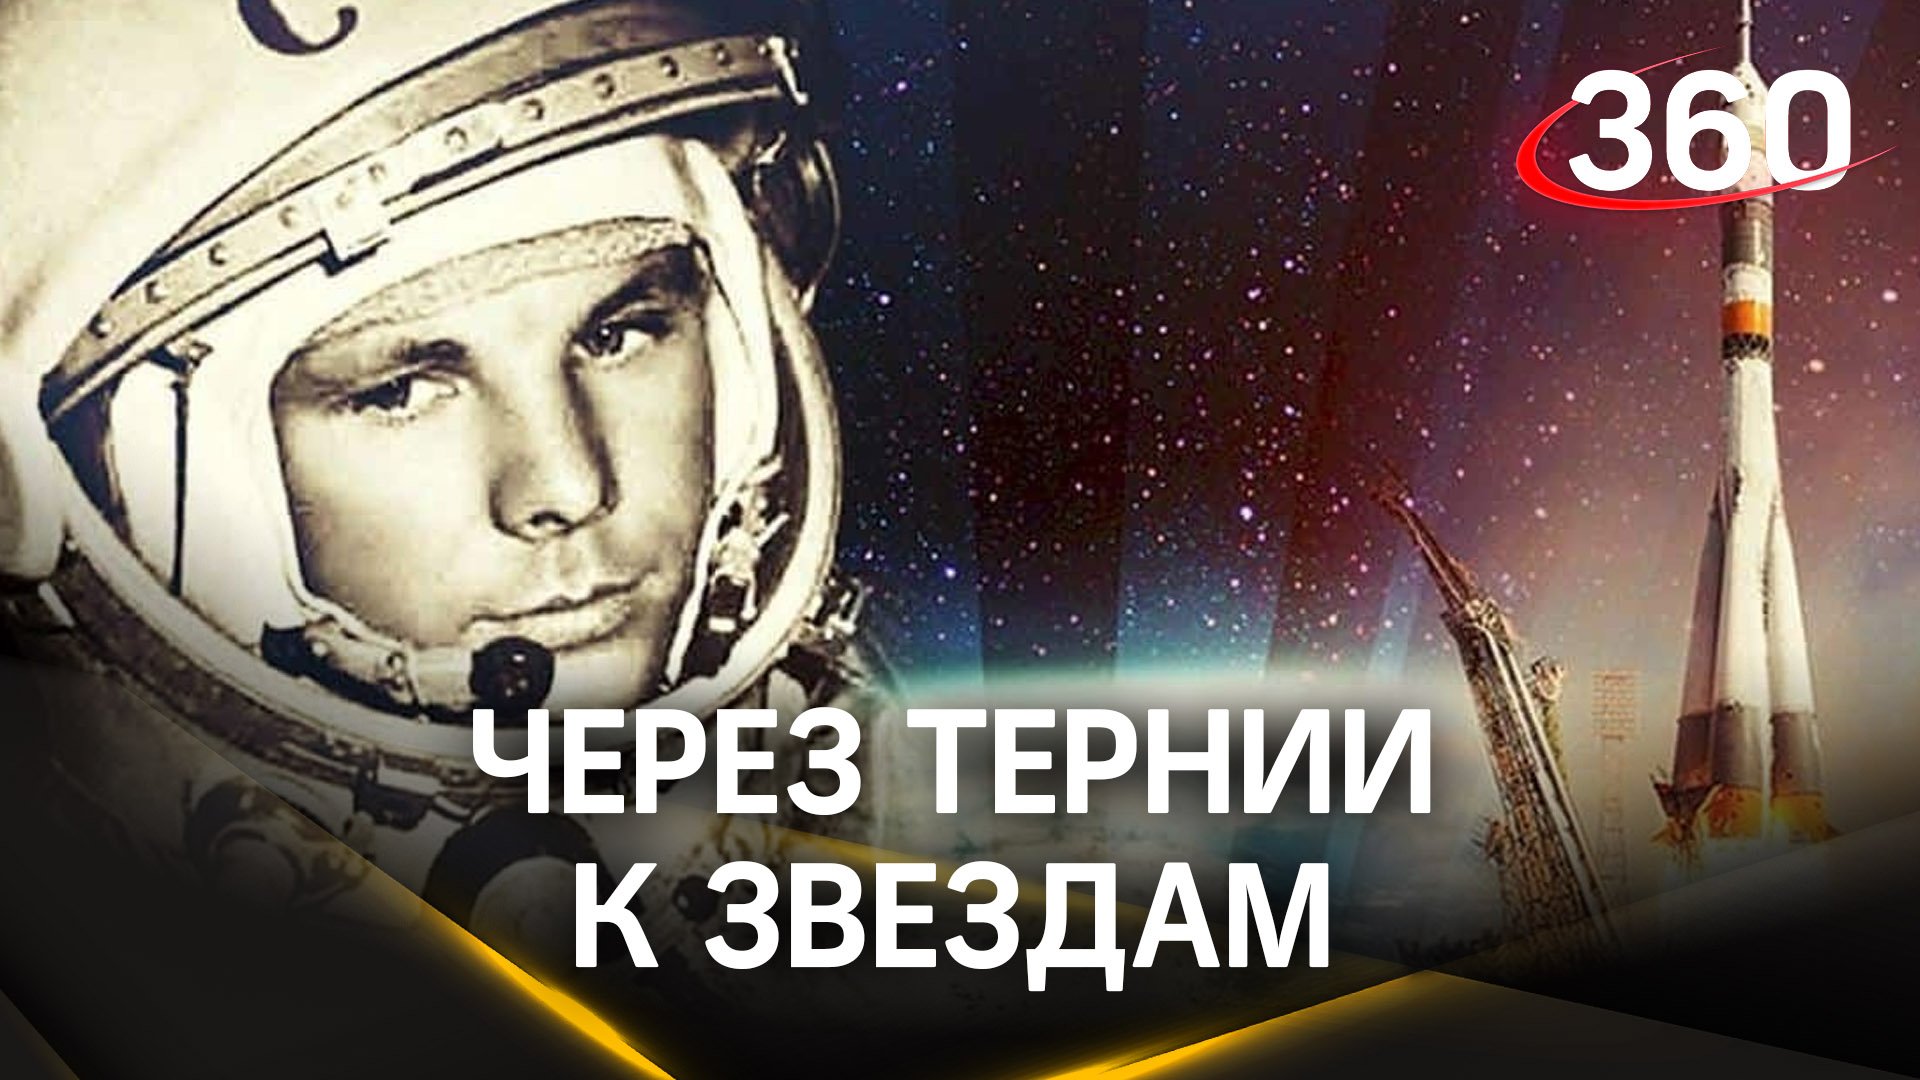 От полета Гагарина в космос до межзвездных перелетов. День космонавтики в РФ. Как все начиналось?